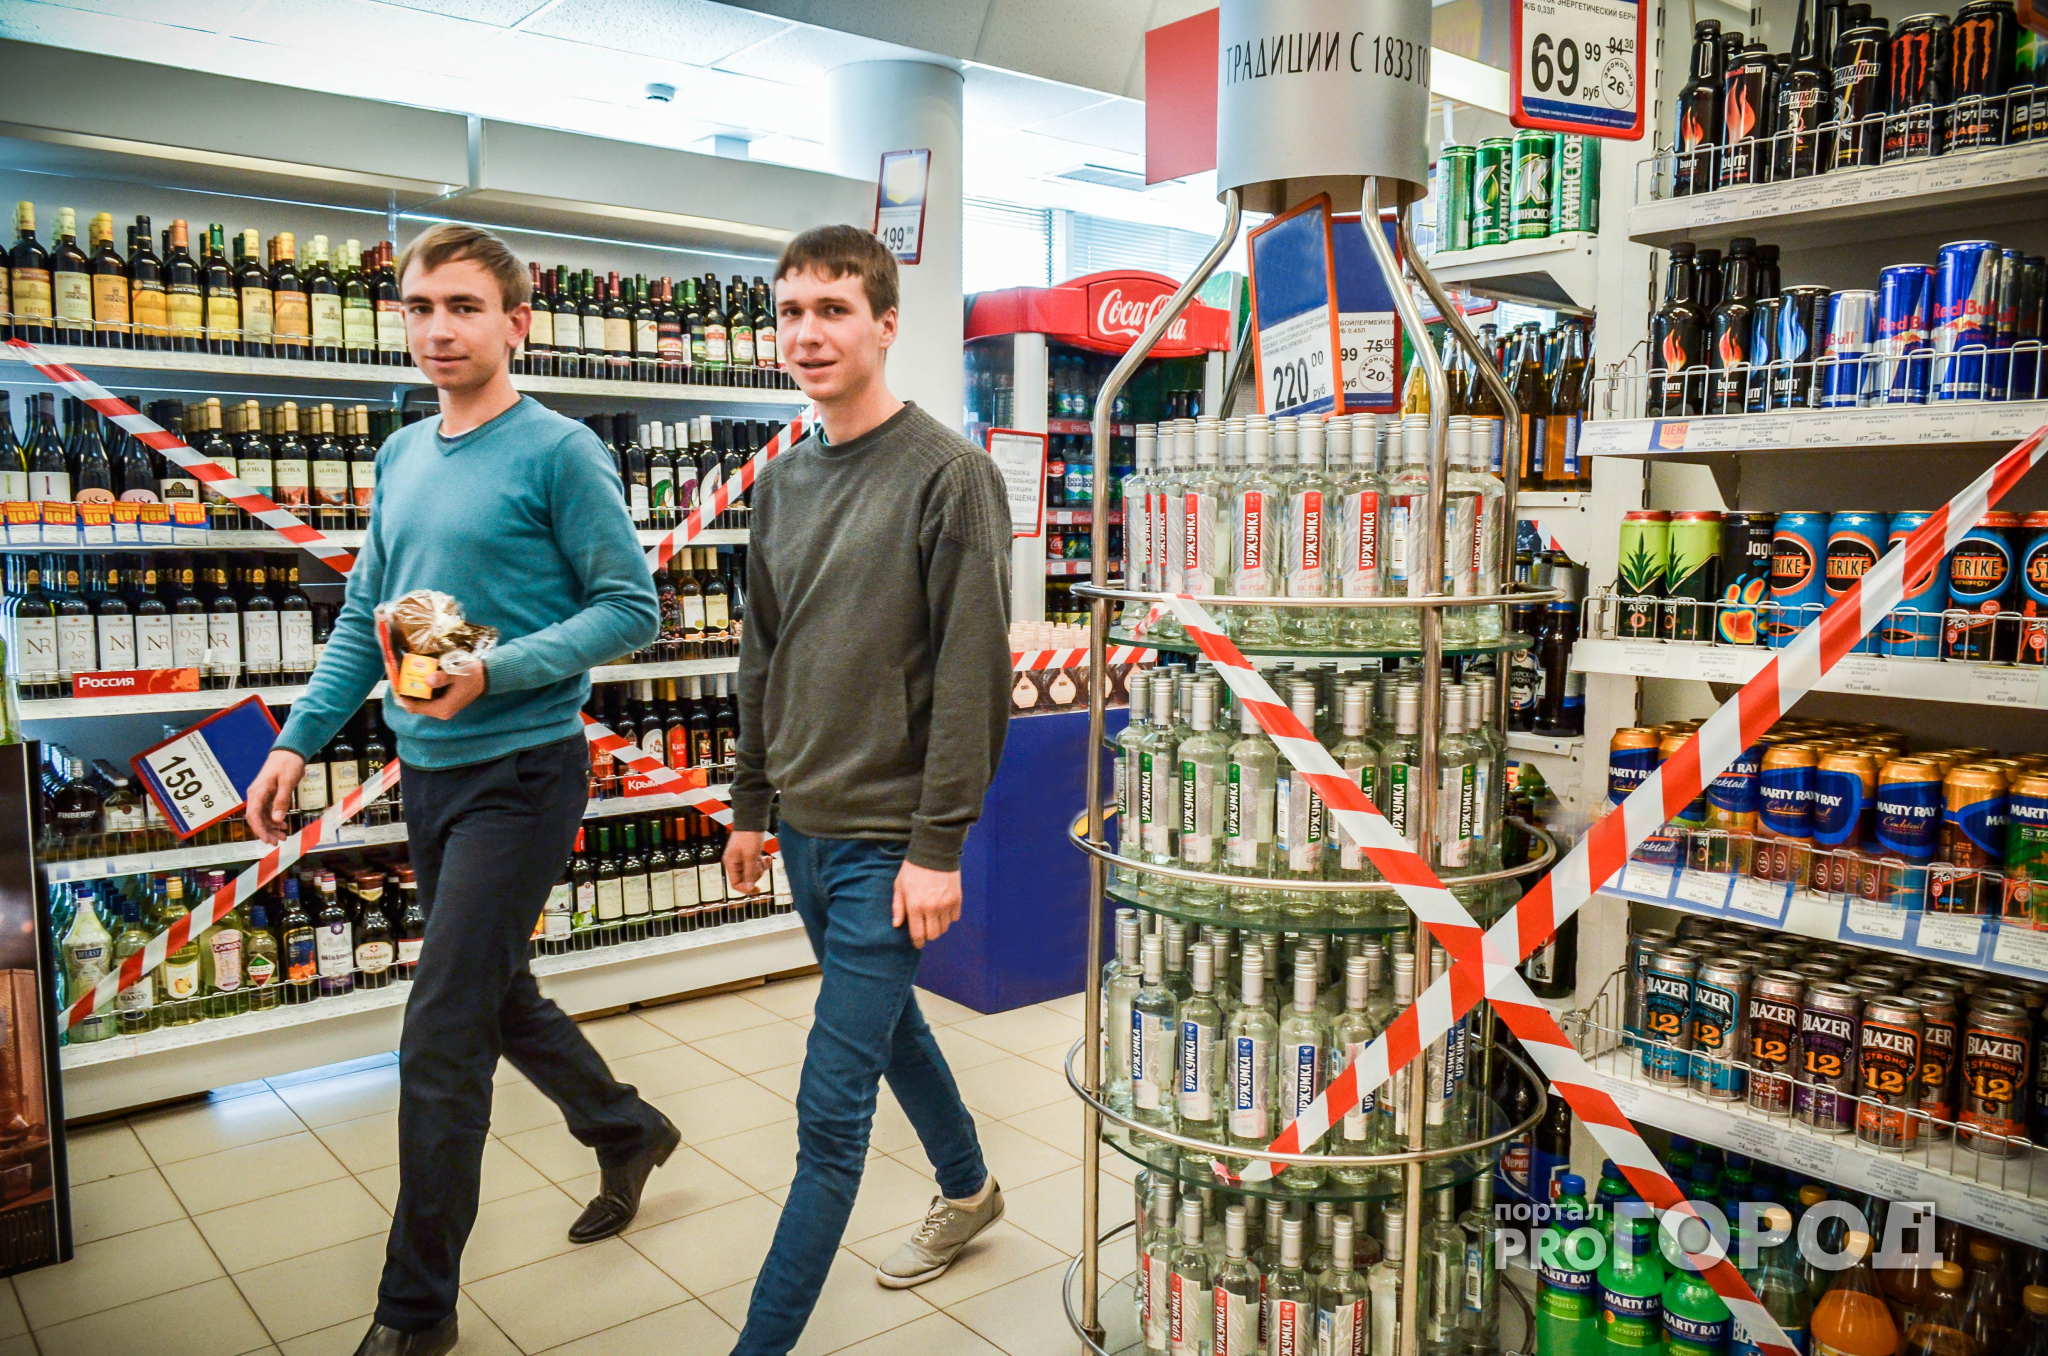 Участники ралли "Шелковый путь" лишат чебоксарцев алкоголя